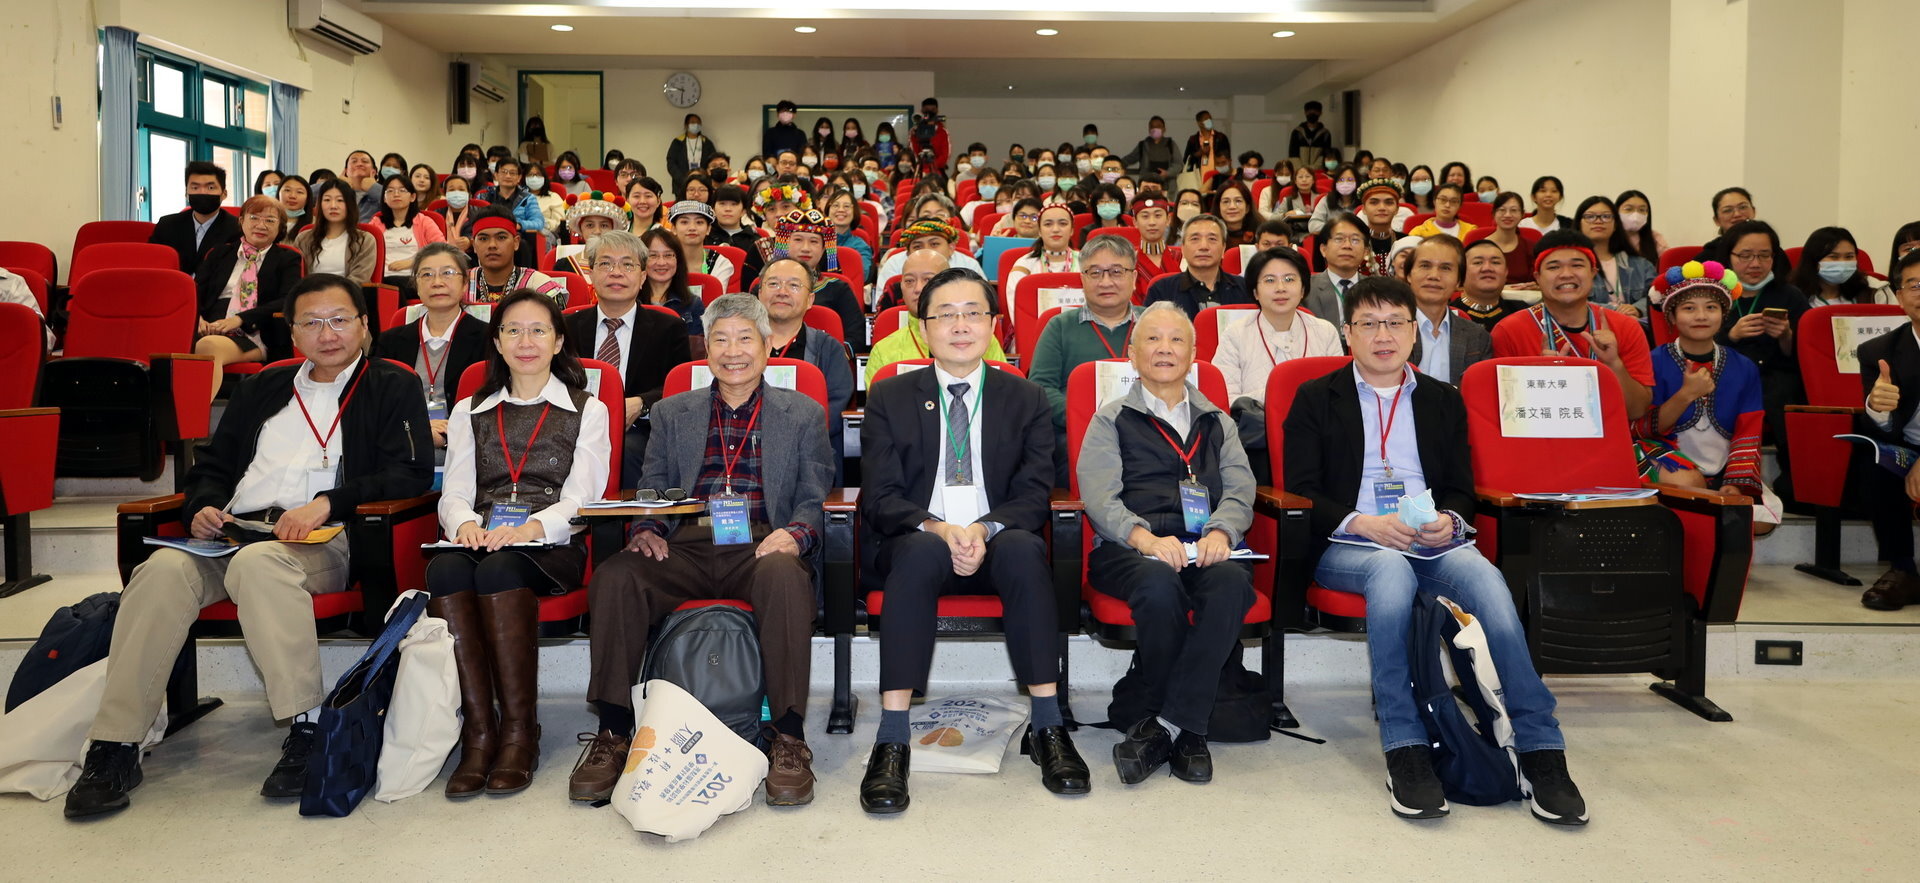 第一屆教育神經科學國際研討會與會人員合照